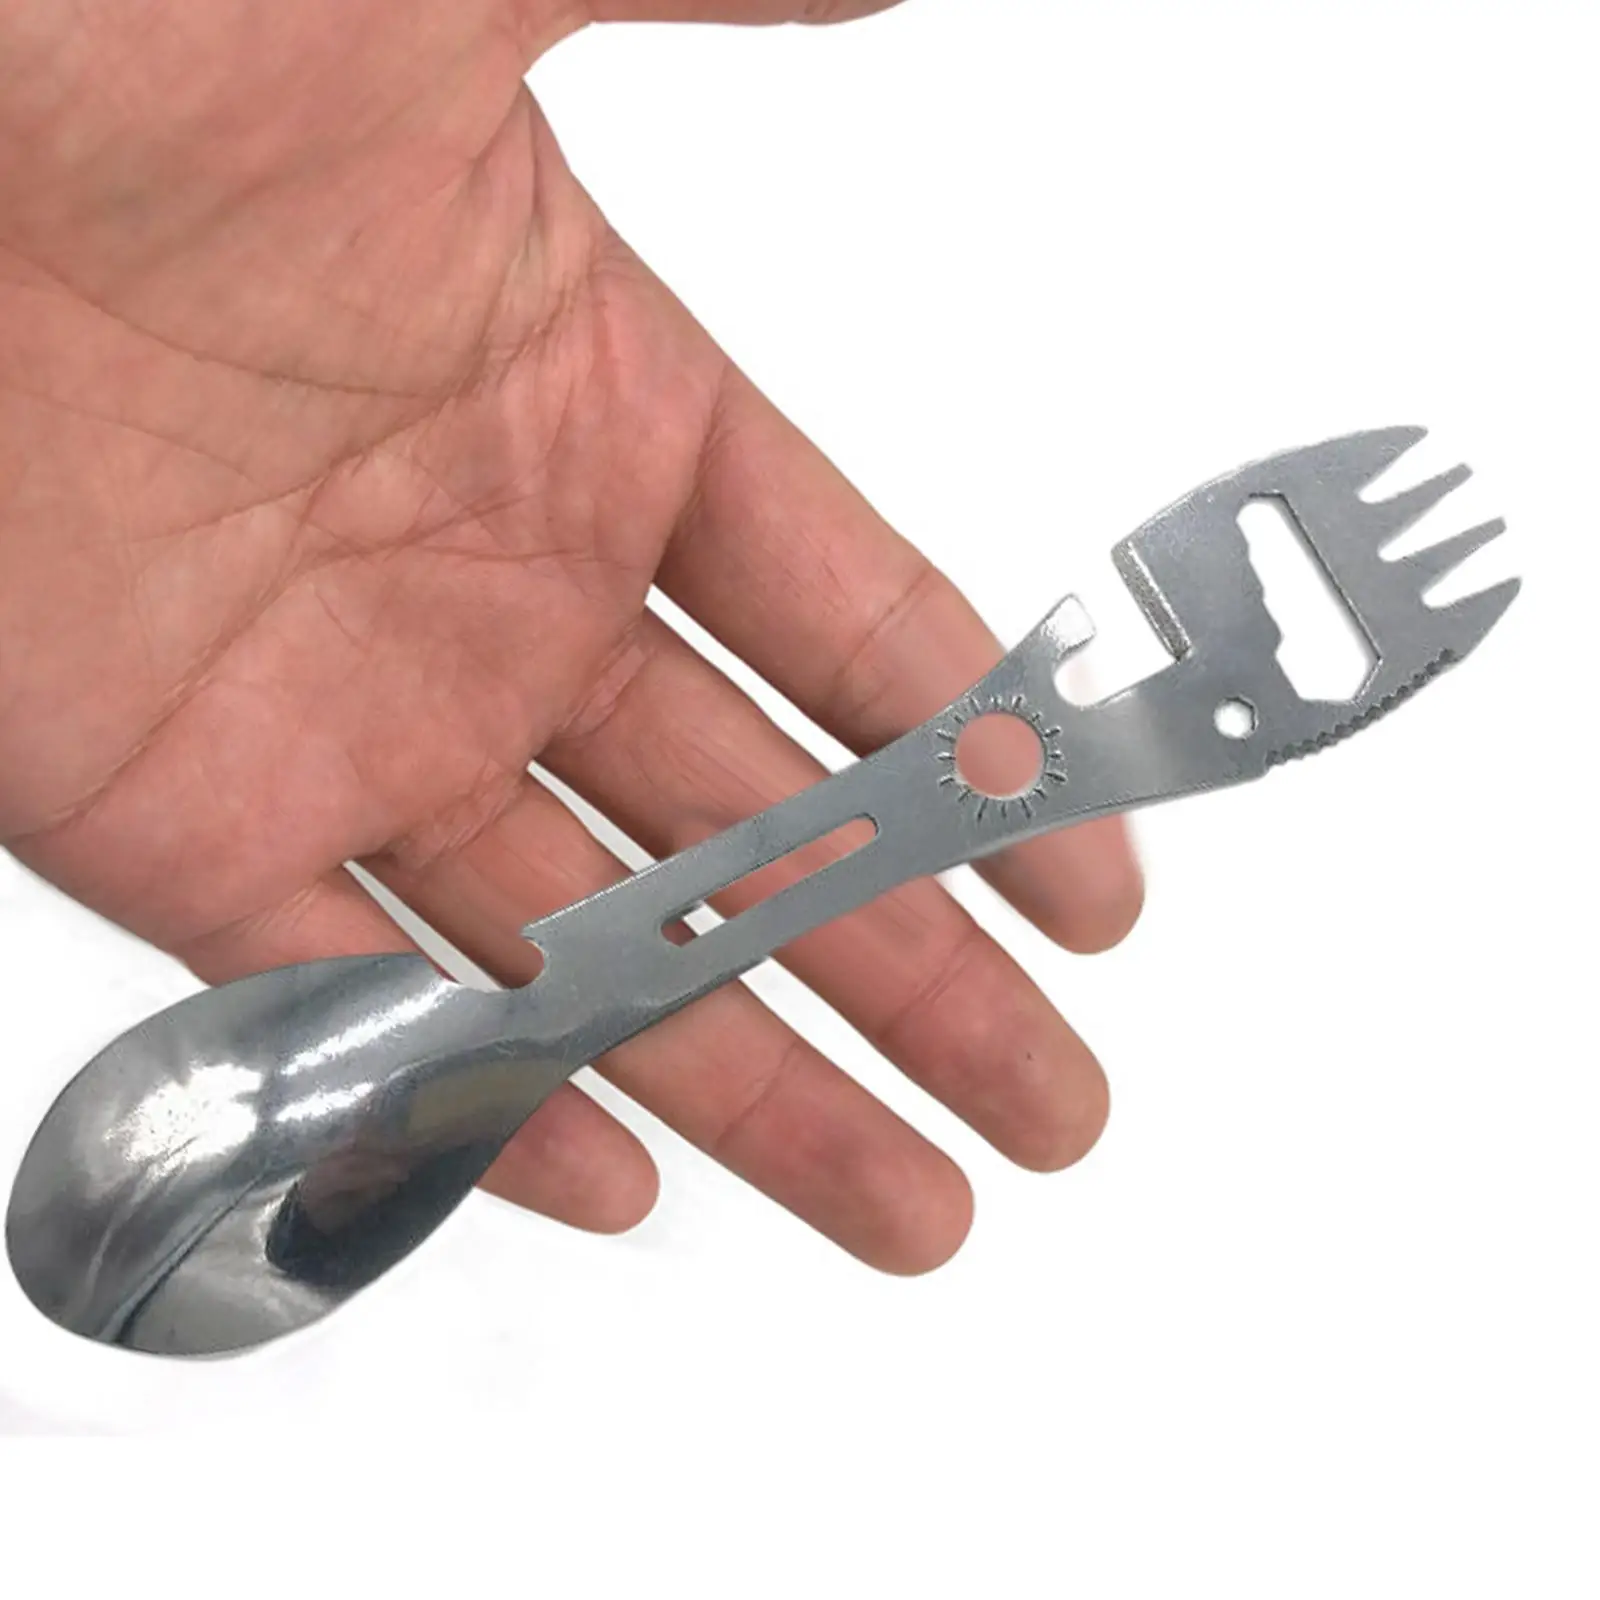 Portable Spork Spoon Can Opener Dinnerware Stainless Steel Functional Tableware